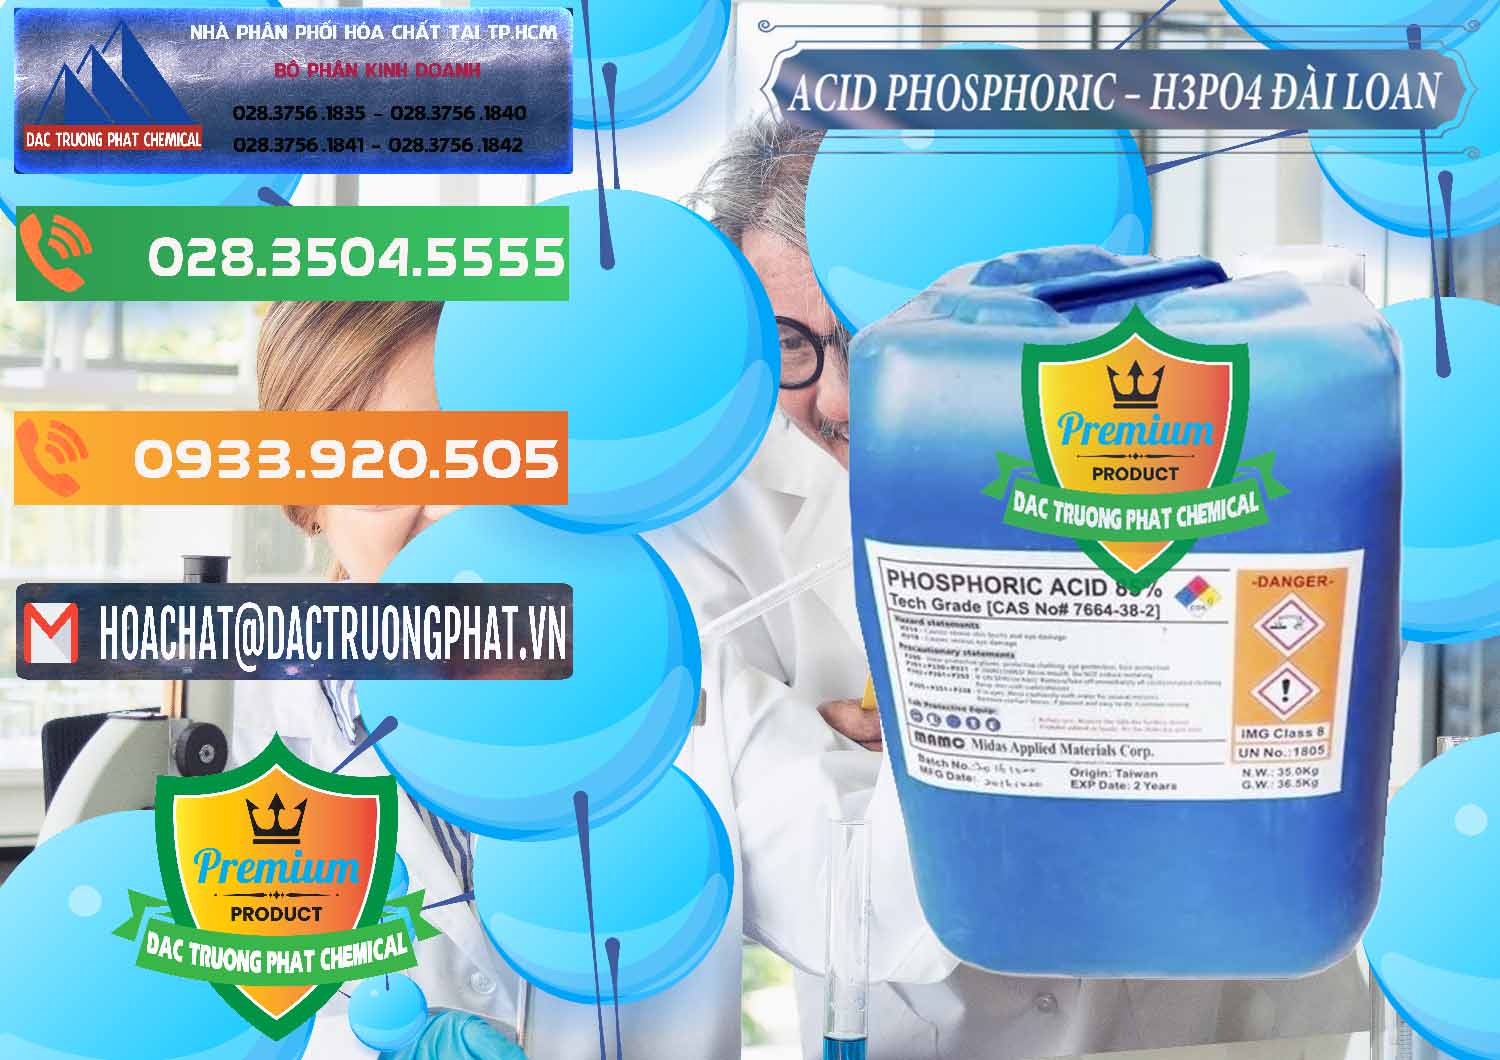 Cung ứng & bán Axit Phosphoric - Acid Phosphoric H3PO4 85% Đài Loan Taiwan - 0351 - Công ty kinh doanh và cung cấp hóa chất tại TP.HCM - hoachatxulynuoc.com.vn